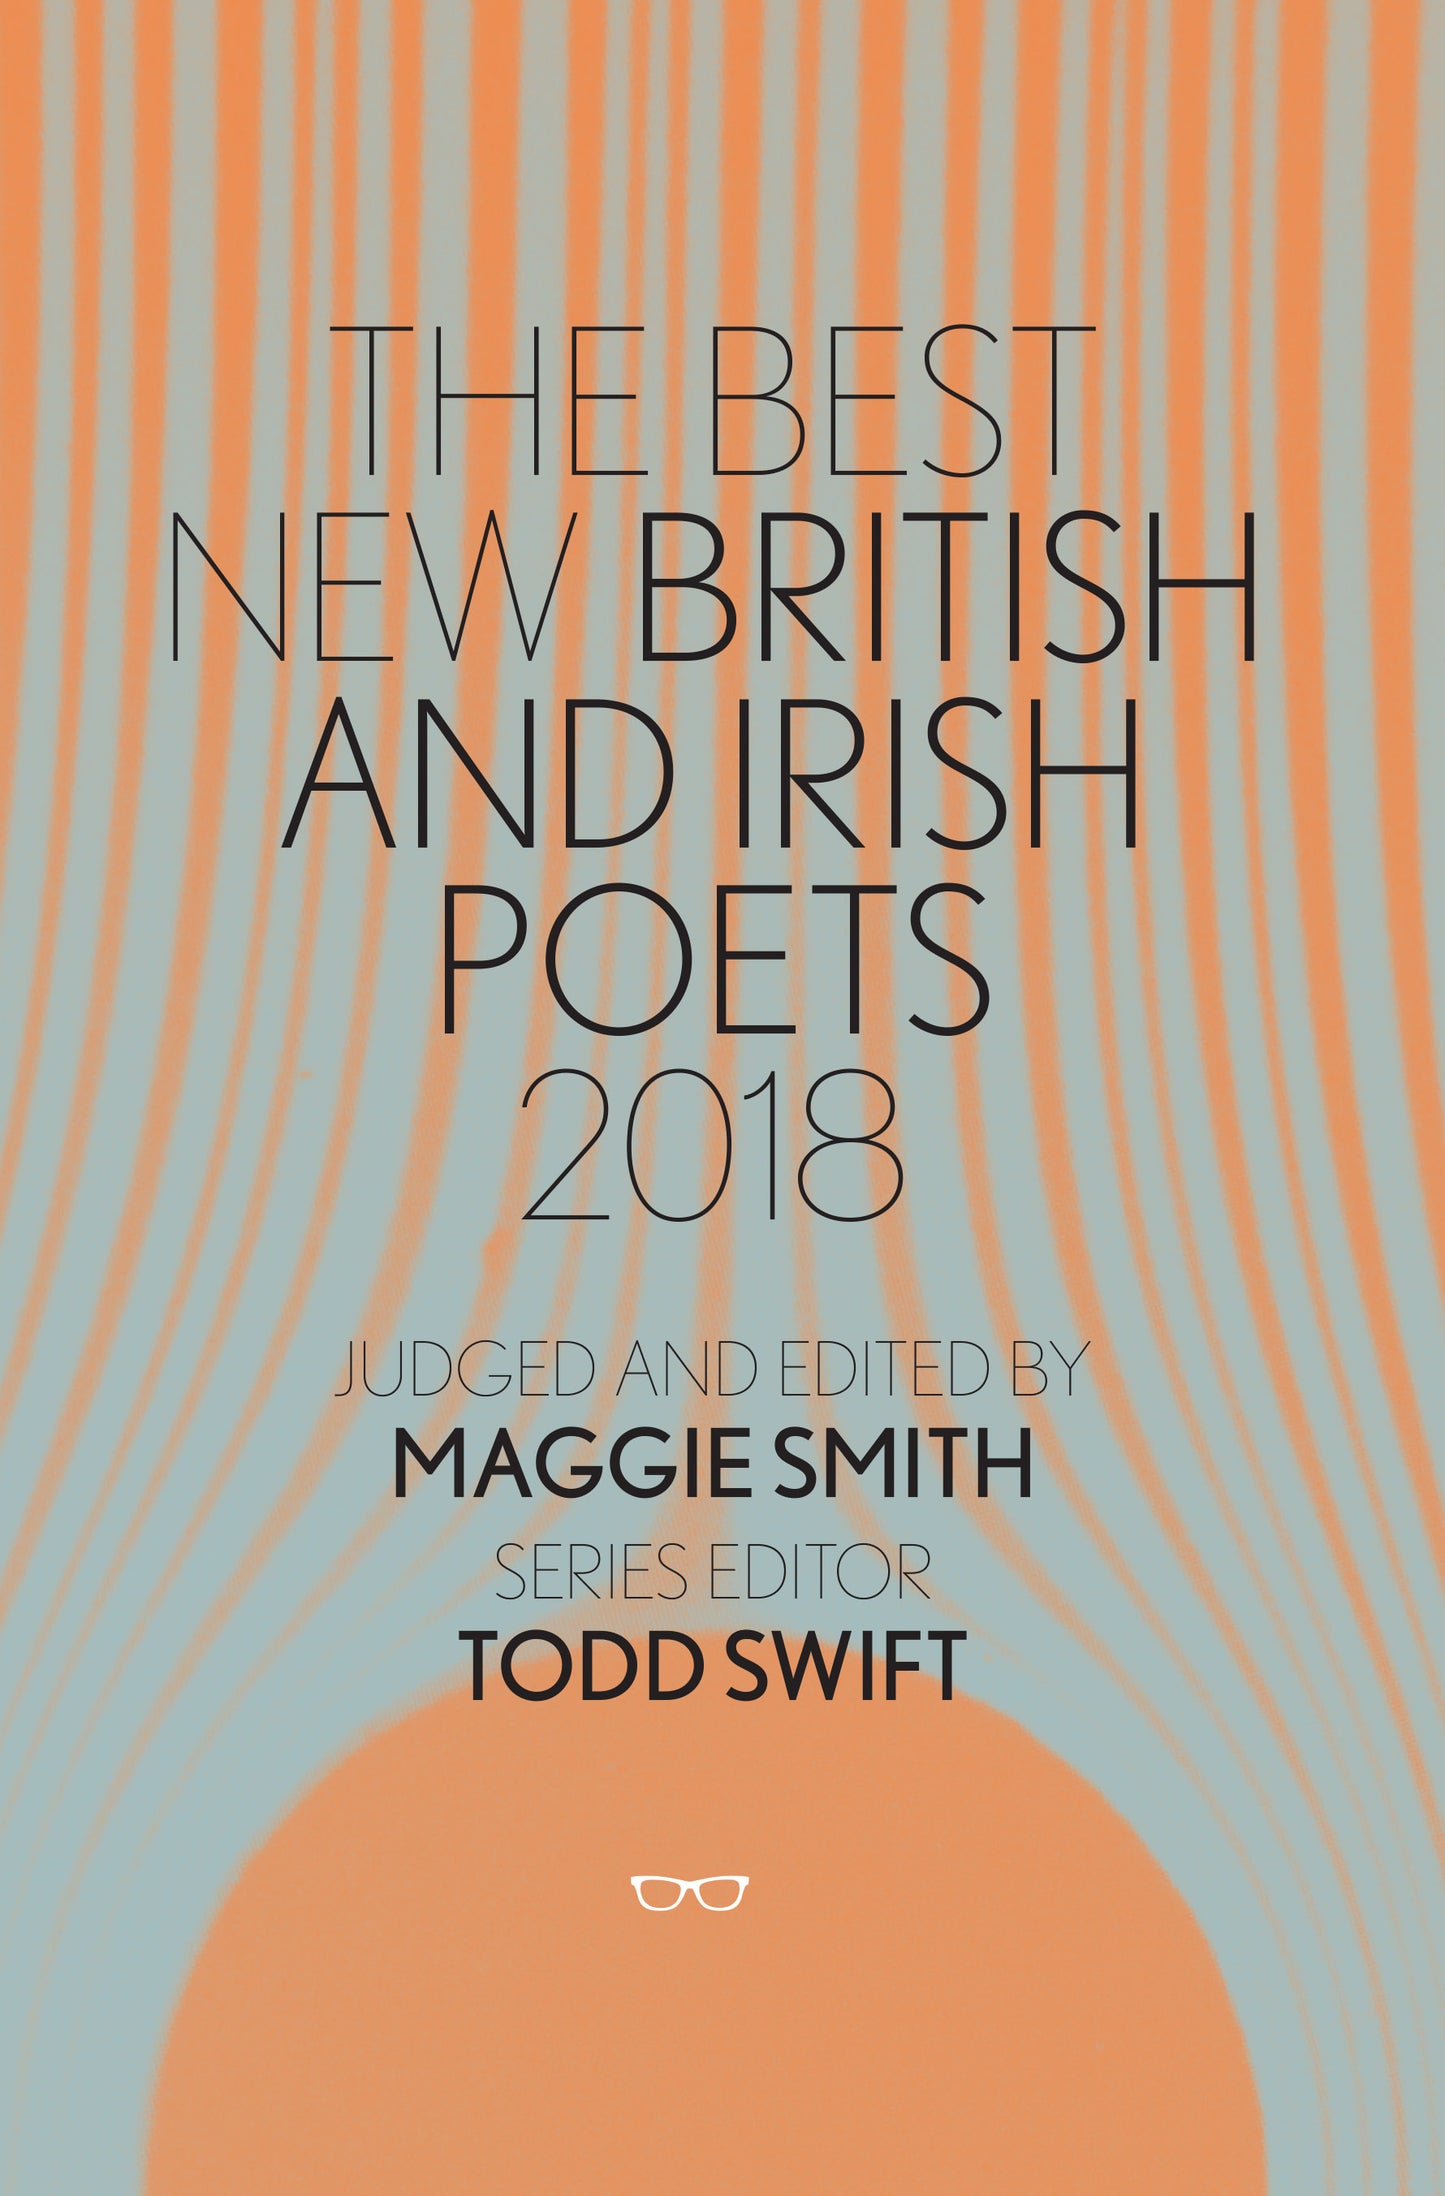 The Best New British and Irish Poets 2018